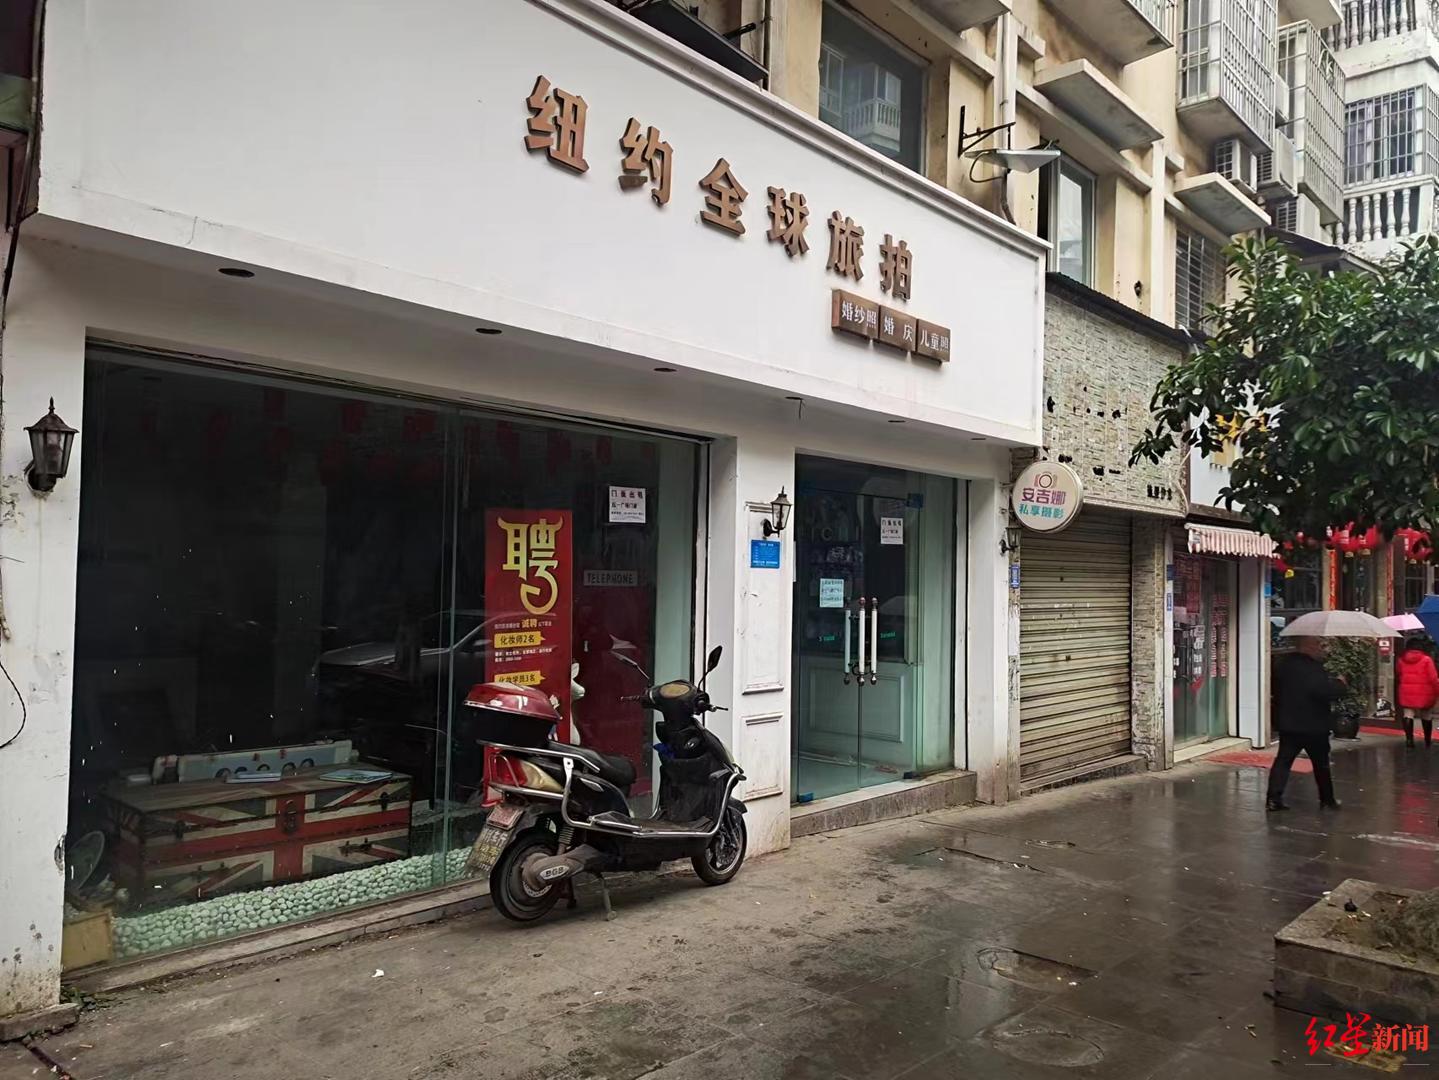 该摄影店位于蓬溪县商业中心